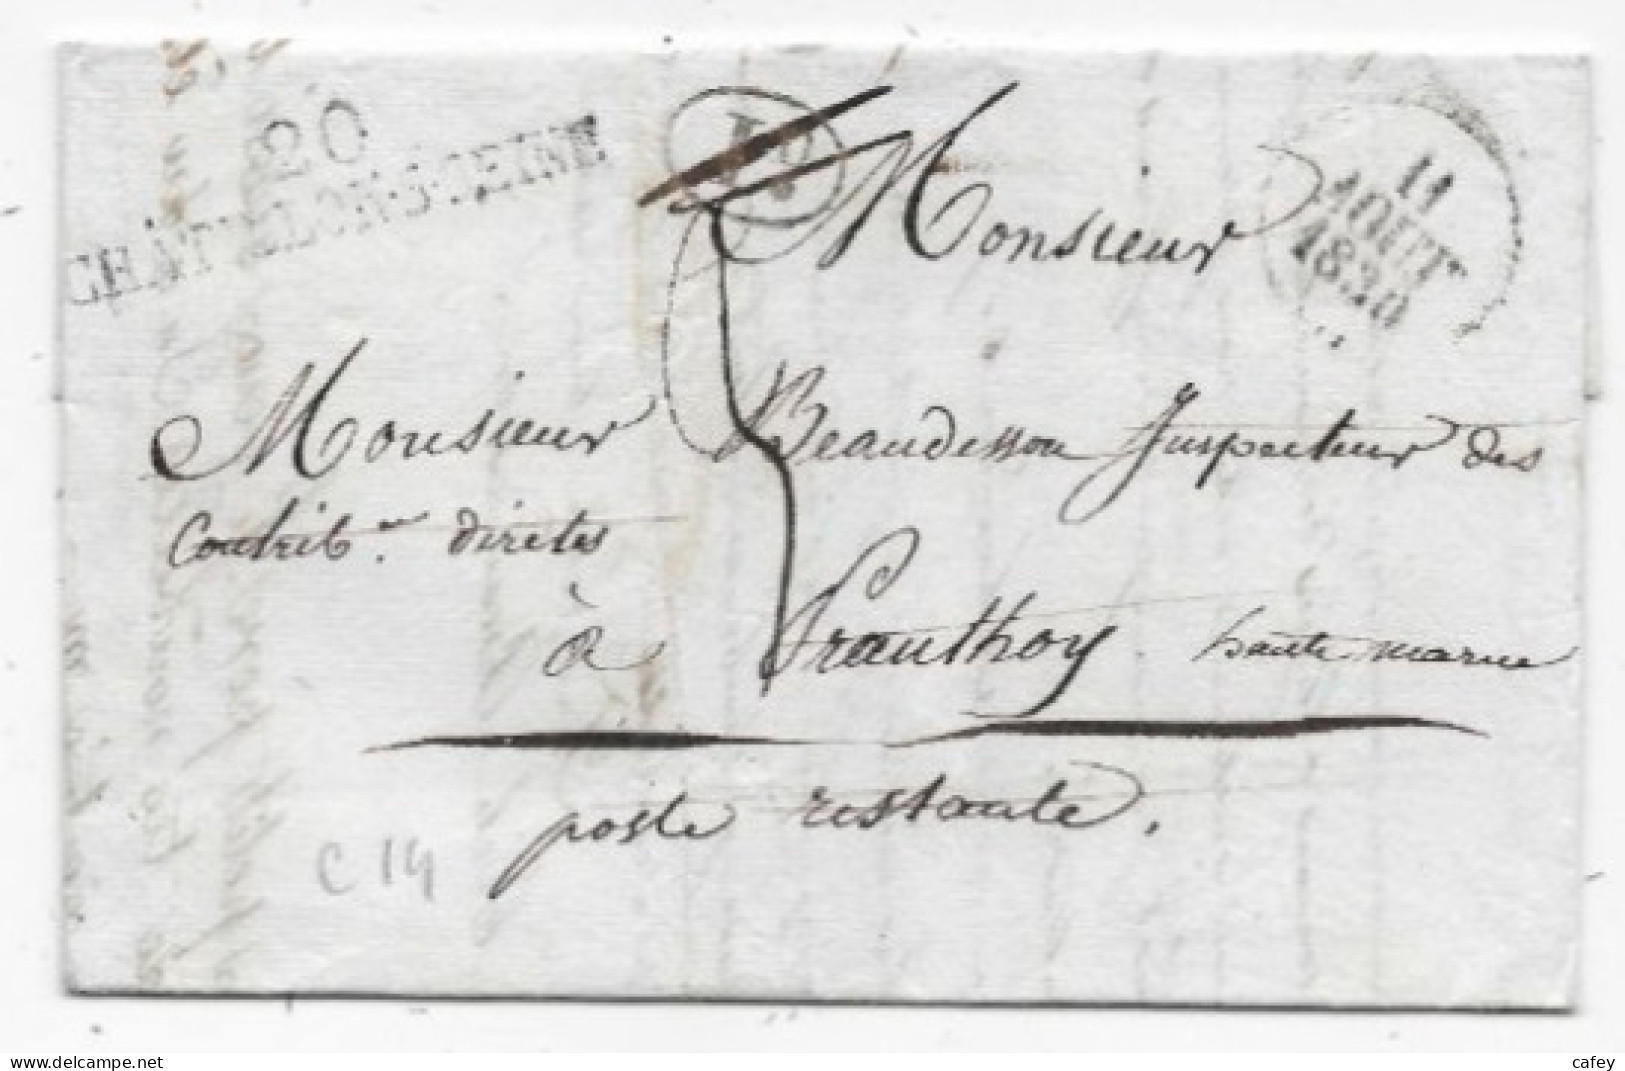 COTE D'OR Lettre Avec Texte De 1830 Marque Postale 20 / CHATILLON S SEINE + Décime Rural  Rare Association - 1801-1848: Précurseurs XIX